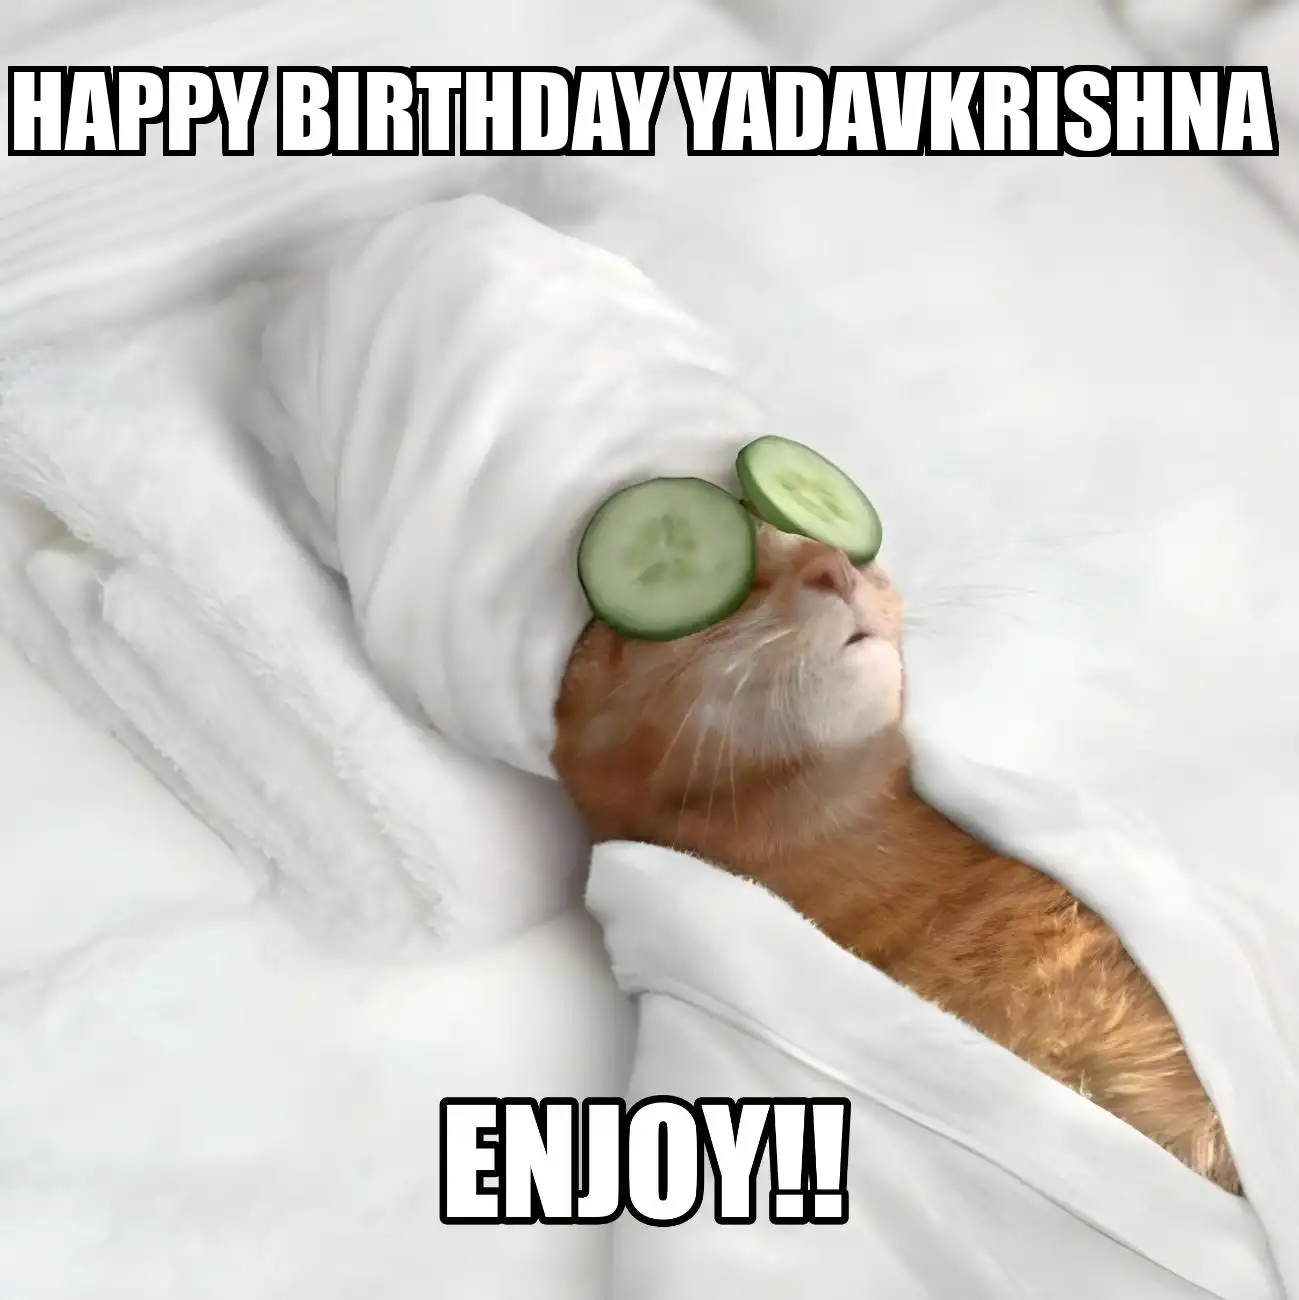 Happy Birthday Yadavkrishna Enjoy Cat Meme